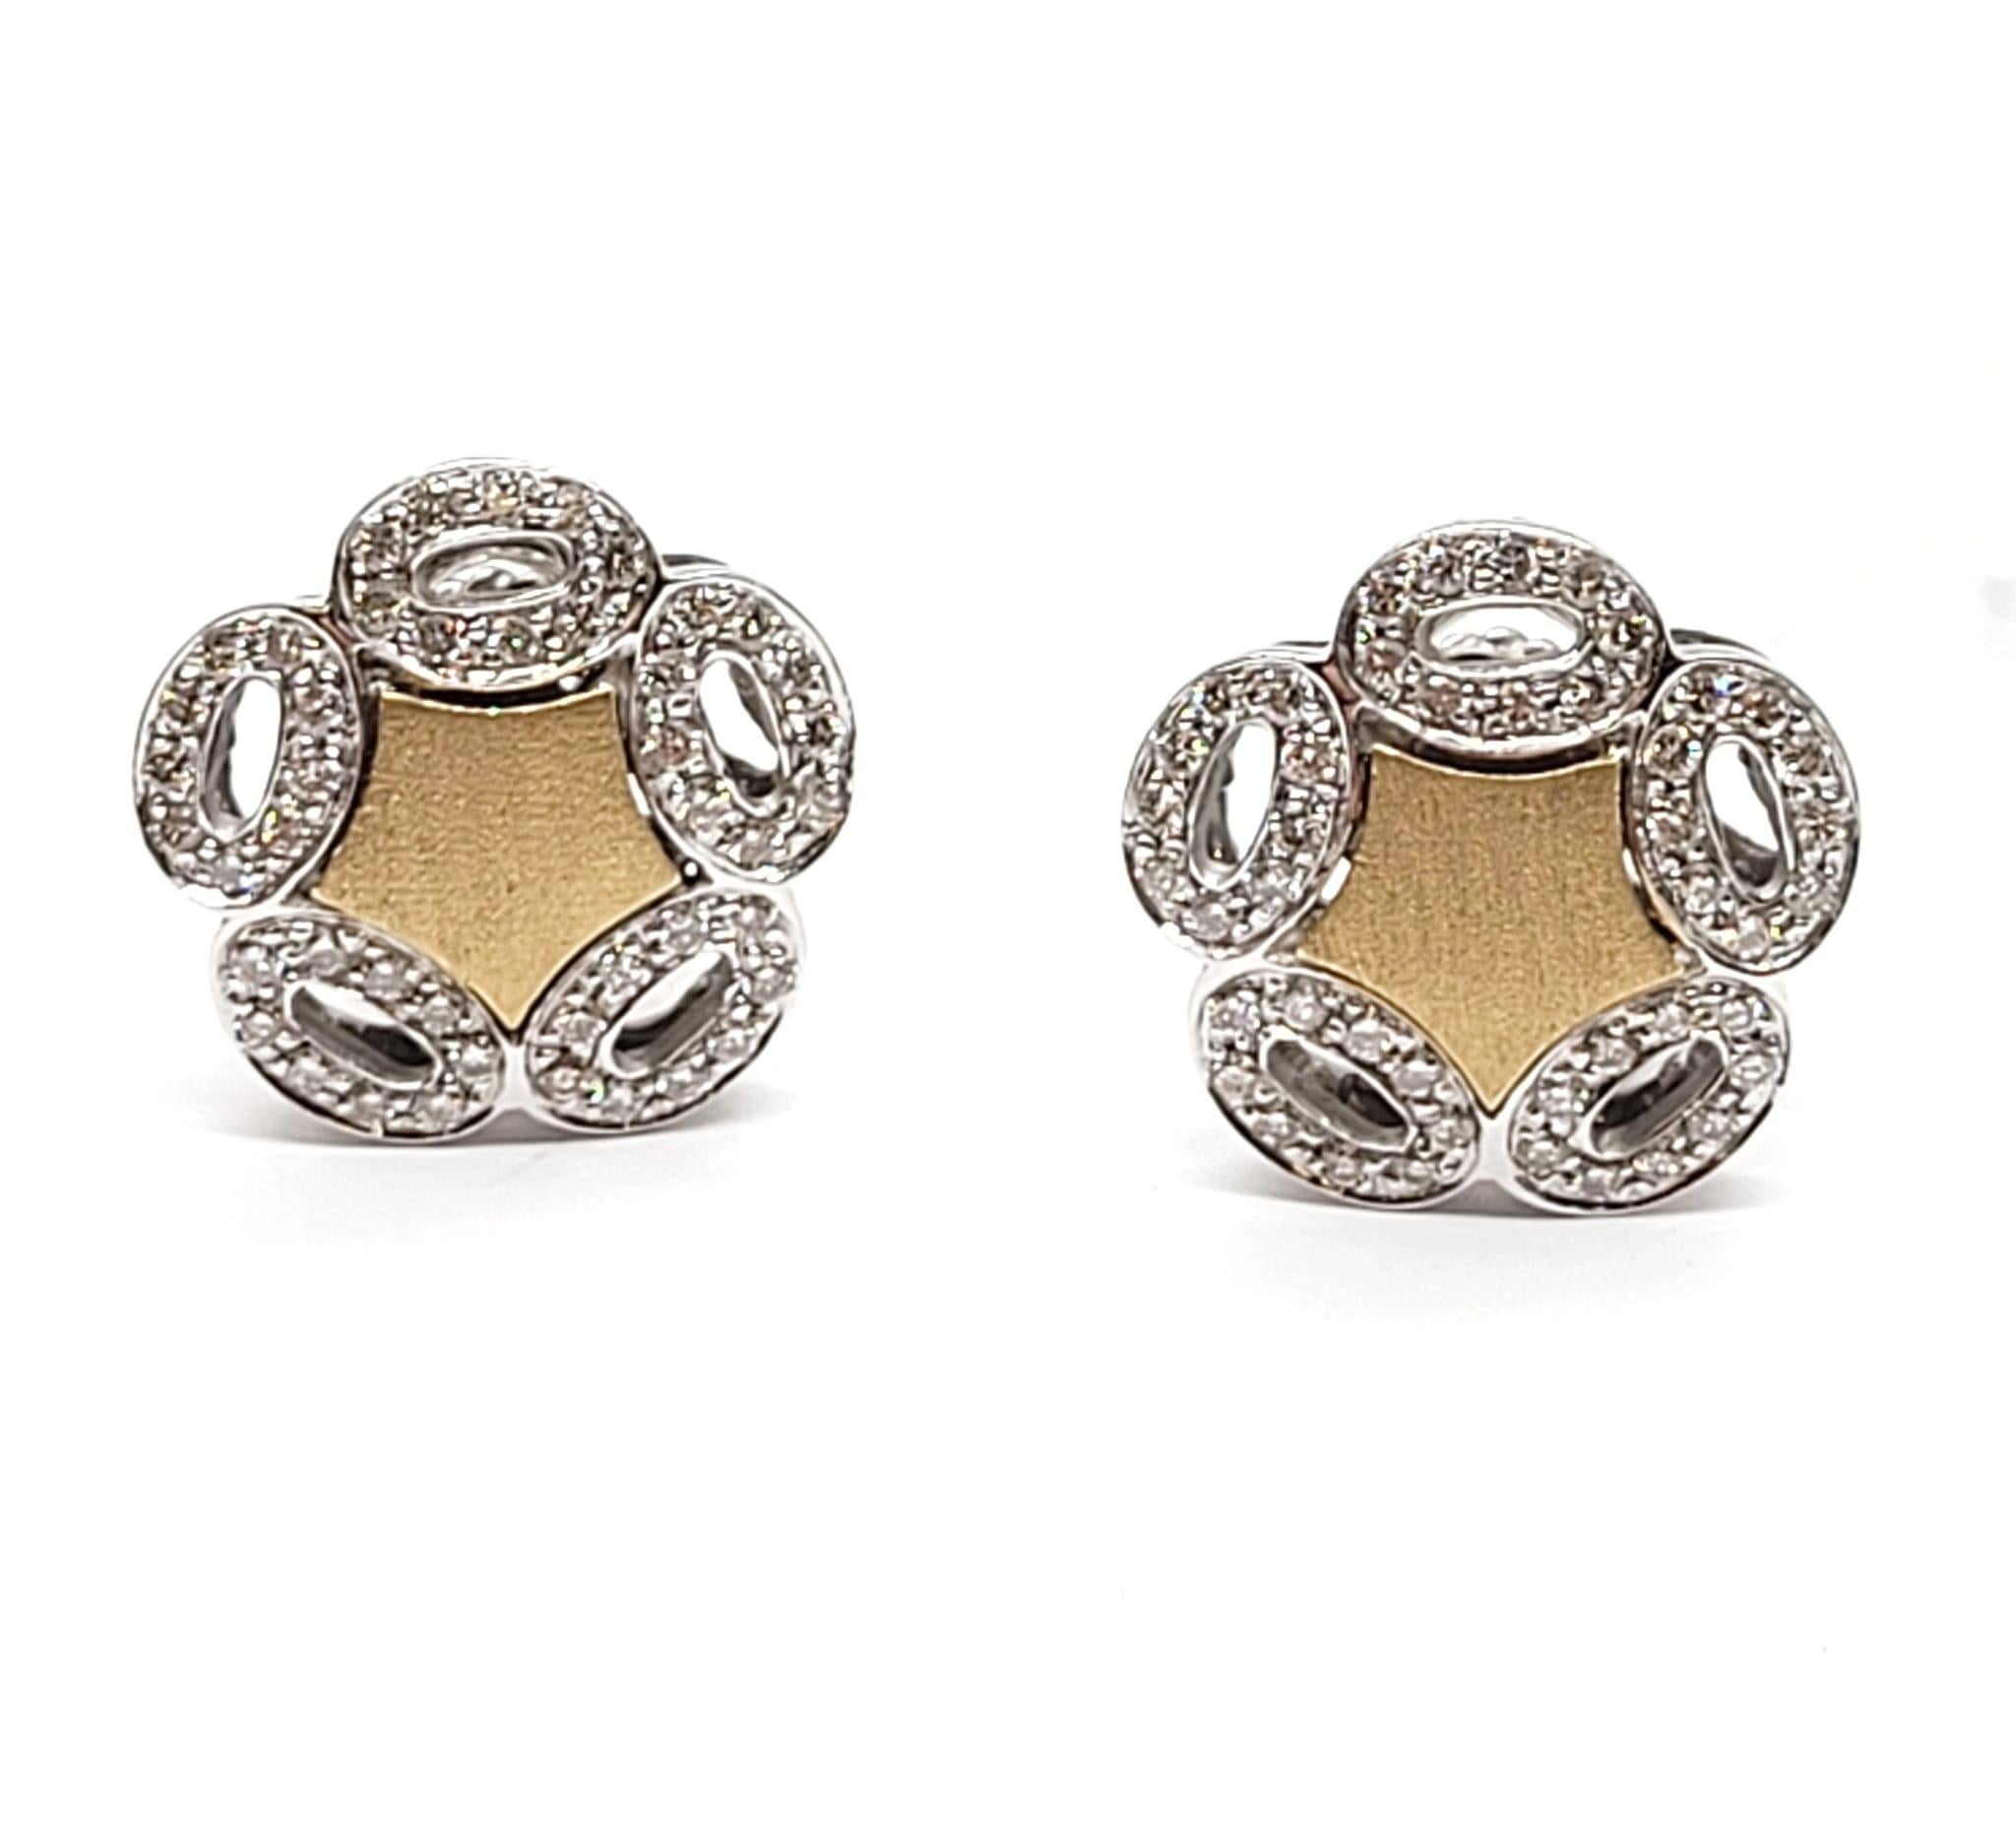 Boucles d'oreilles en or bicolore 18 carats avec diamants Andreoli

Ces boucles d'oreilles présentent les caractéristiques suivantes :
- Diamant de 0,83 carat
- Or bicolore 18K
- Fabriqué en Italie